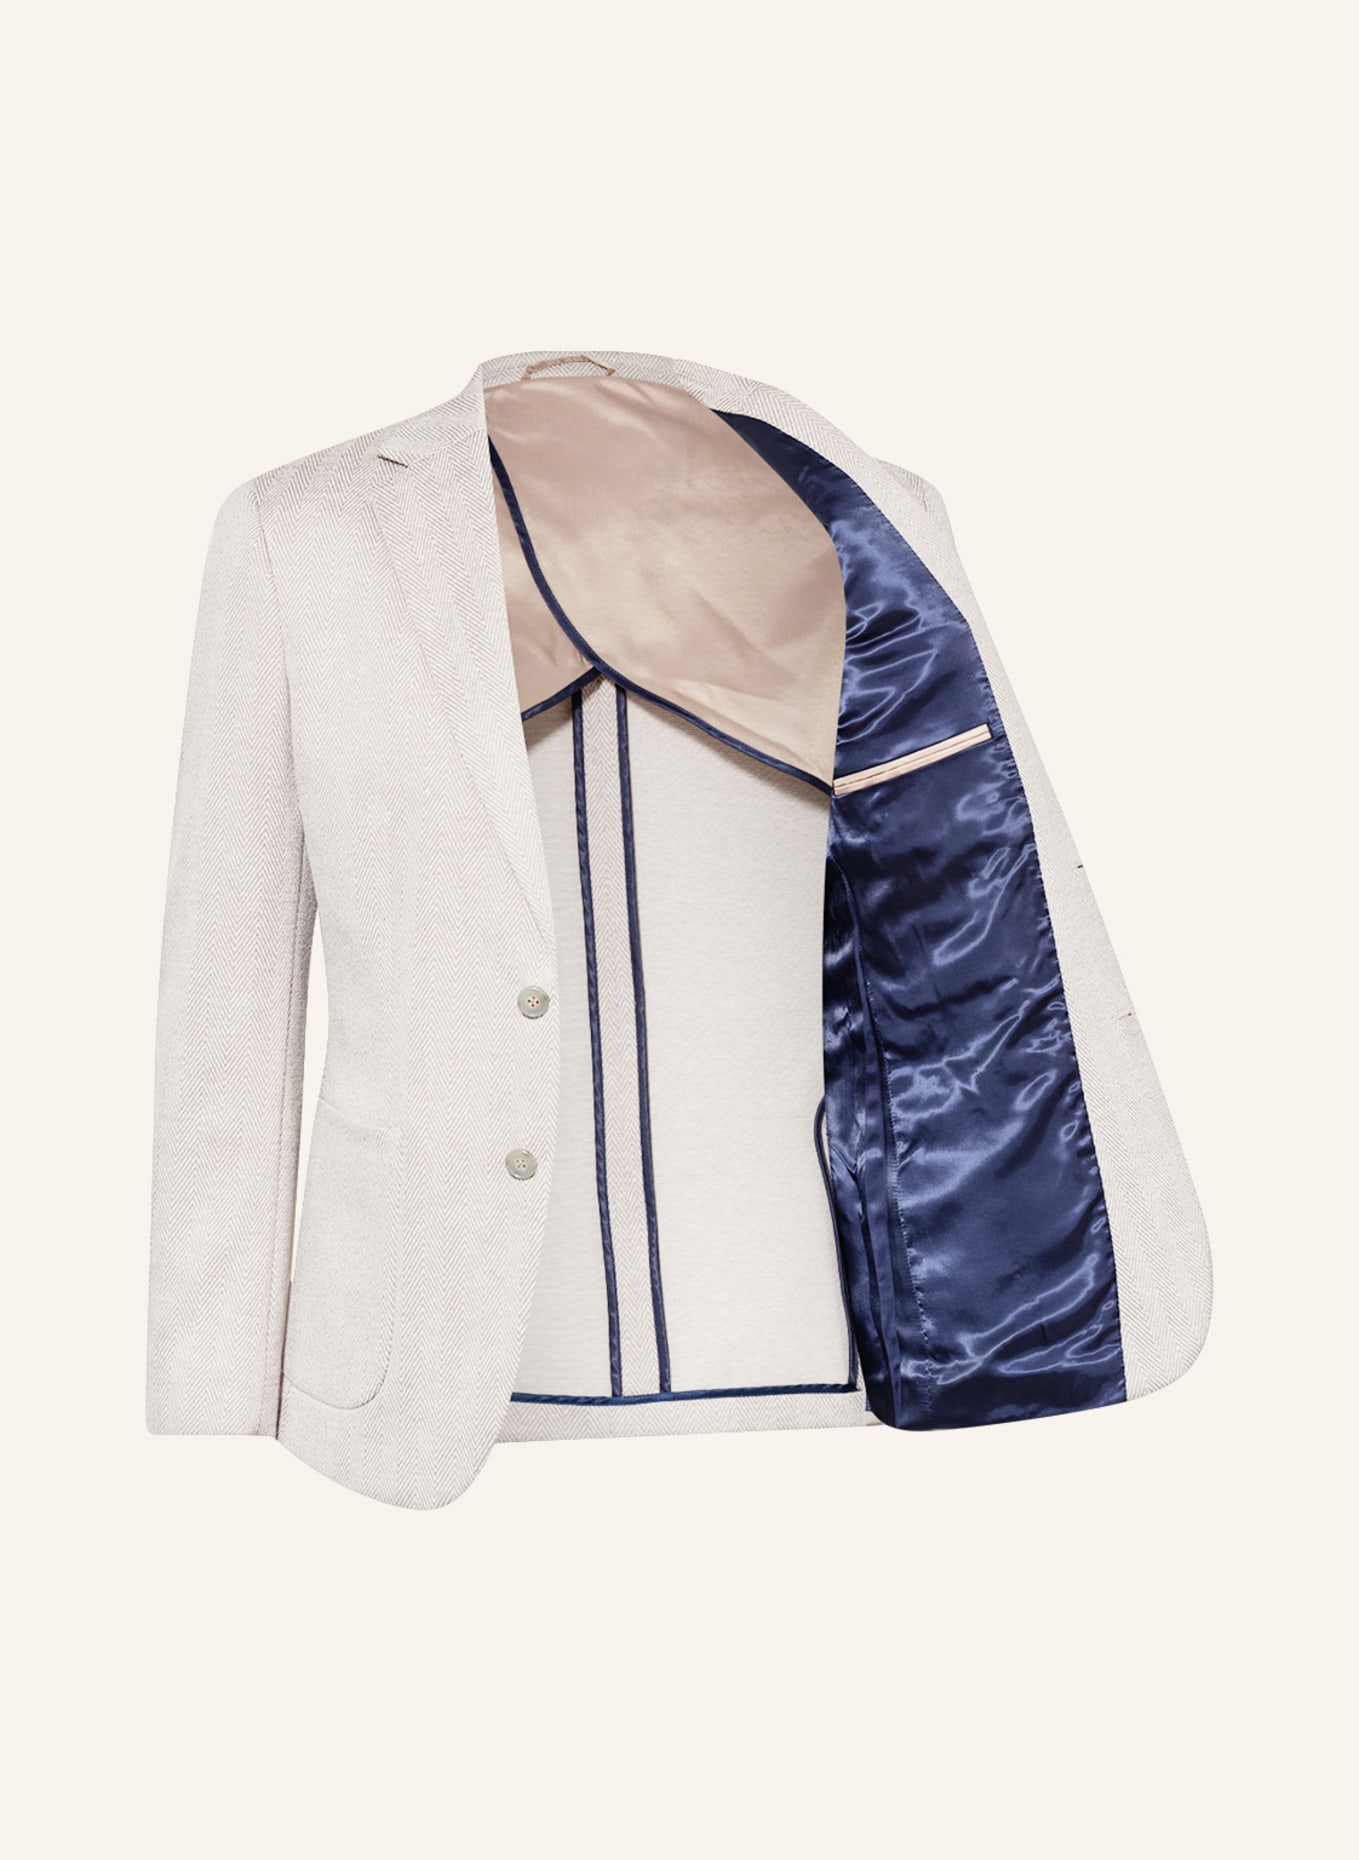 PAUL Suit jacket slim fit, Color: 116 GREY (Image 5)